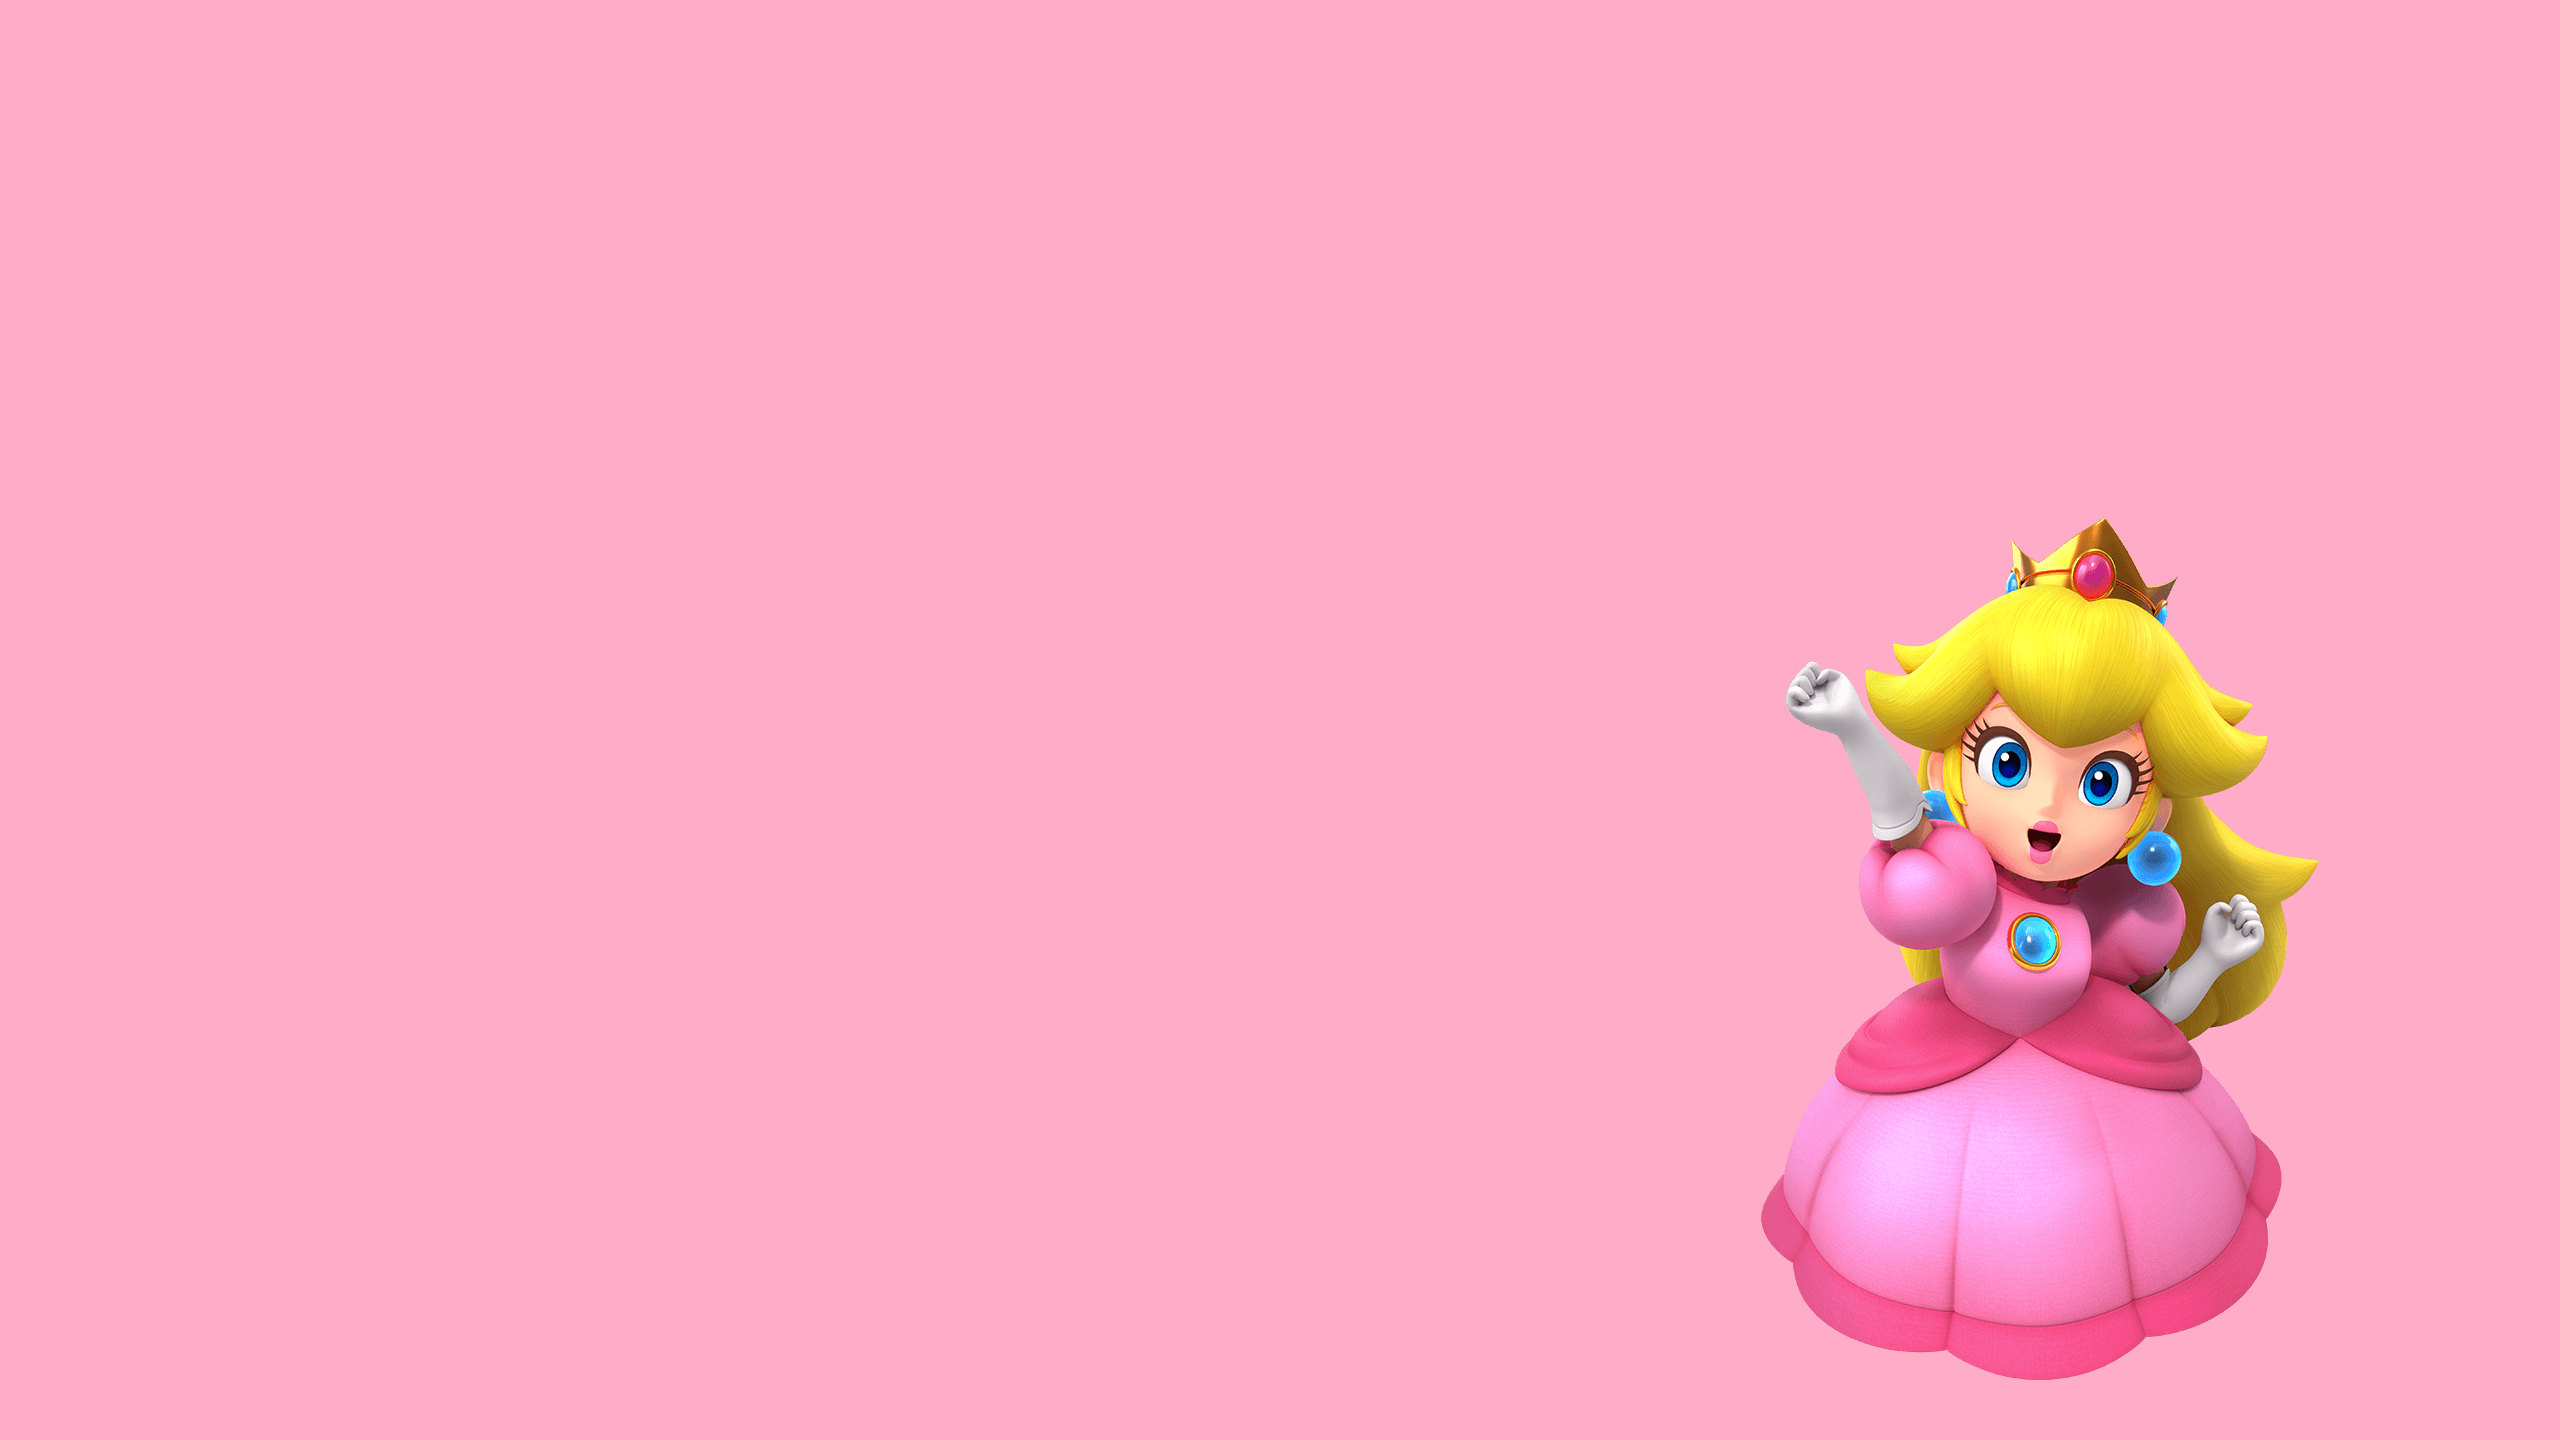 Princess Peach Crown Video Game Girls Super Mario Super Mario Bros Super Mario Rpg Pink Background S 2560x1440